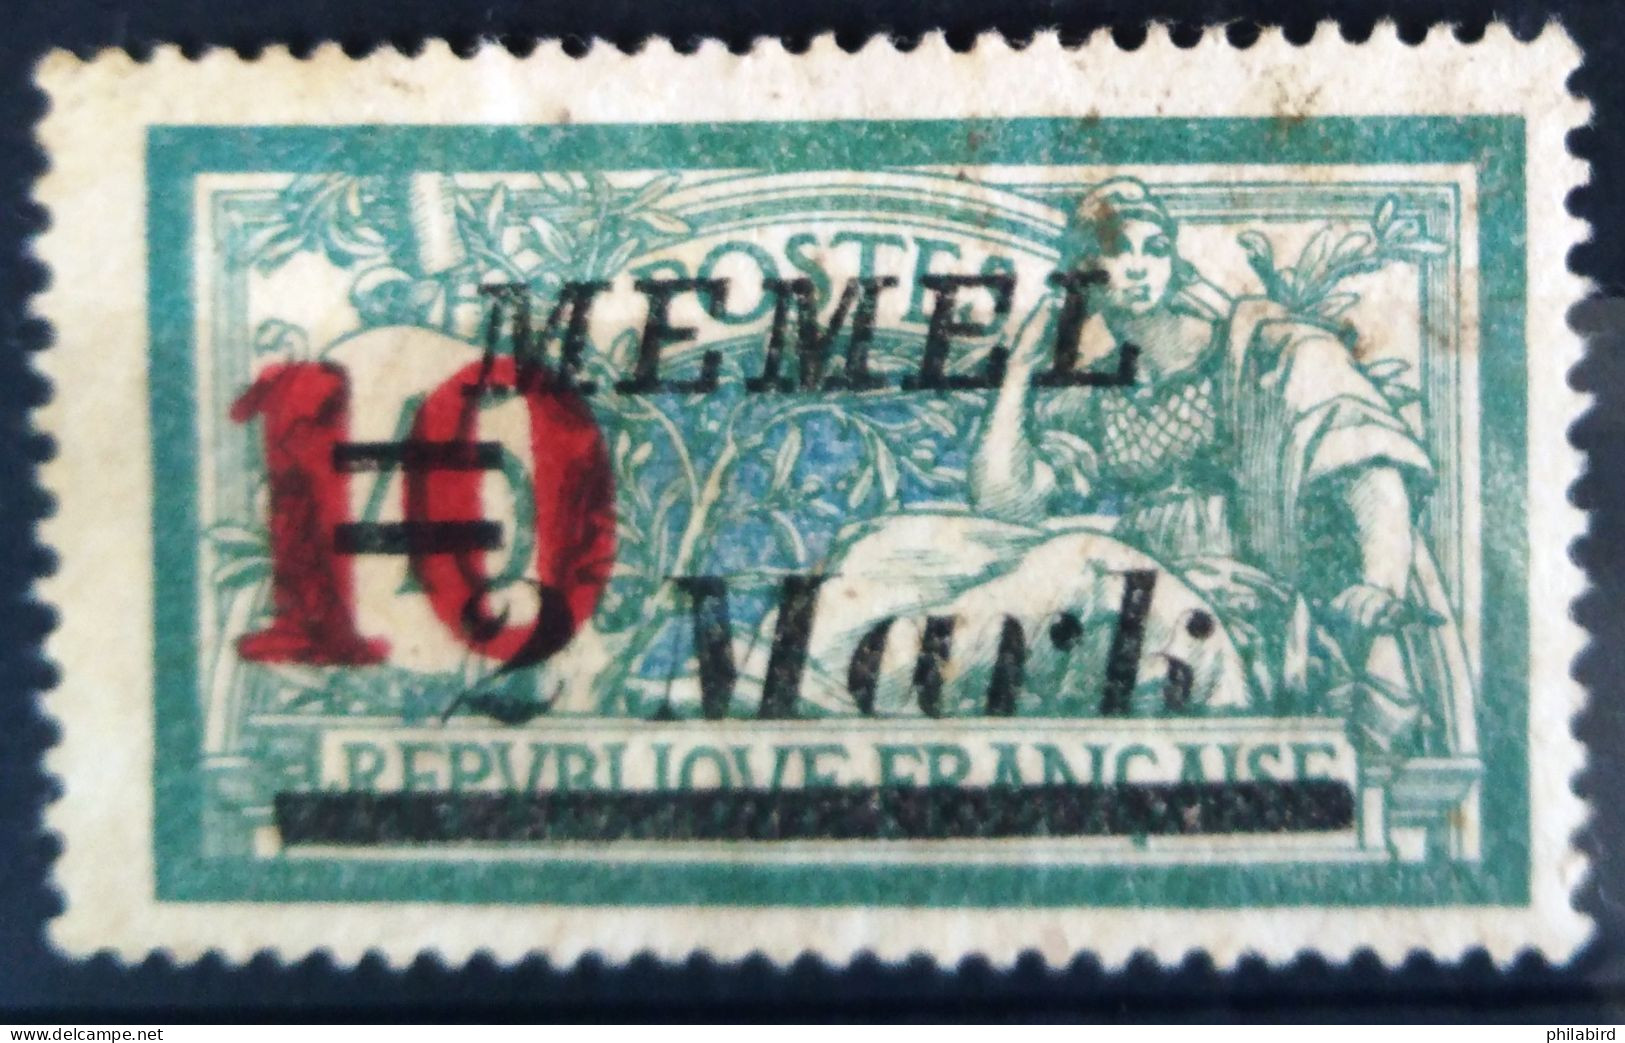 ALLEMAGNE - MEMEL                    N° 82                       OBLITERE - Memel (Klaïpeda) 1923